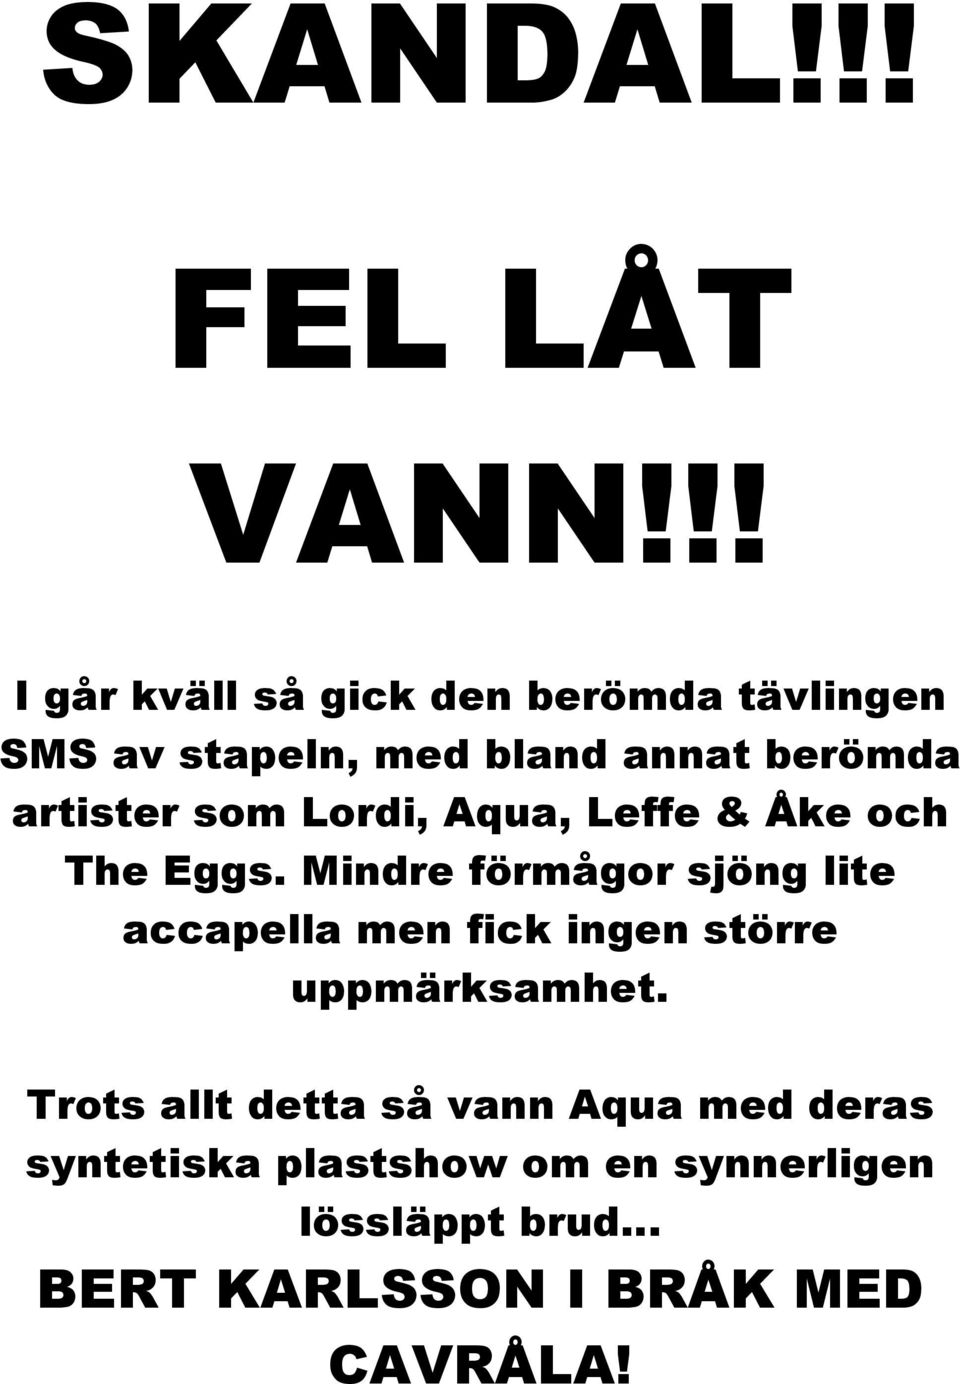 artister som Lordi, Aqua, Leffe & Åke och The Eggs.